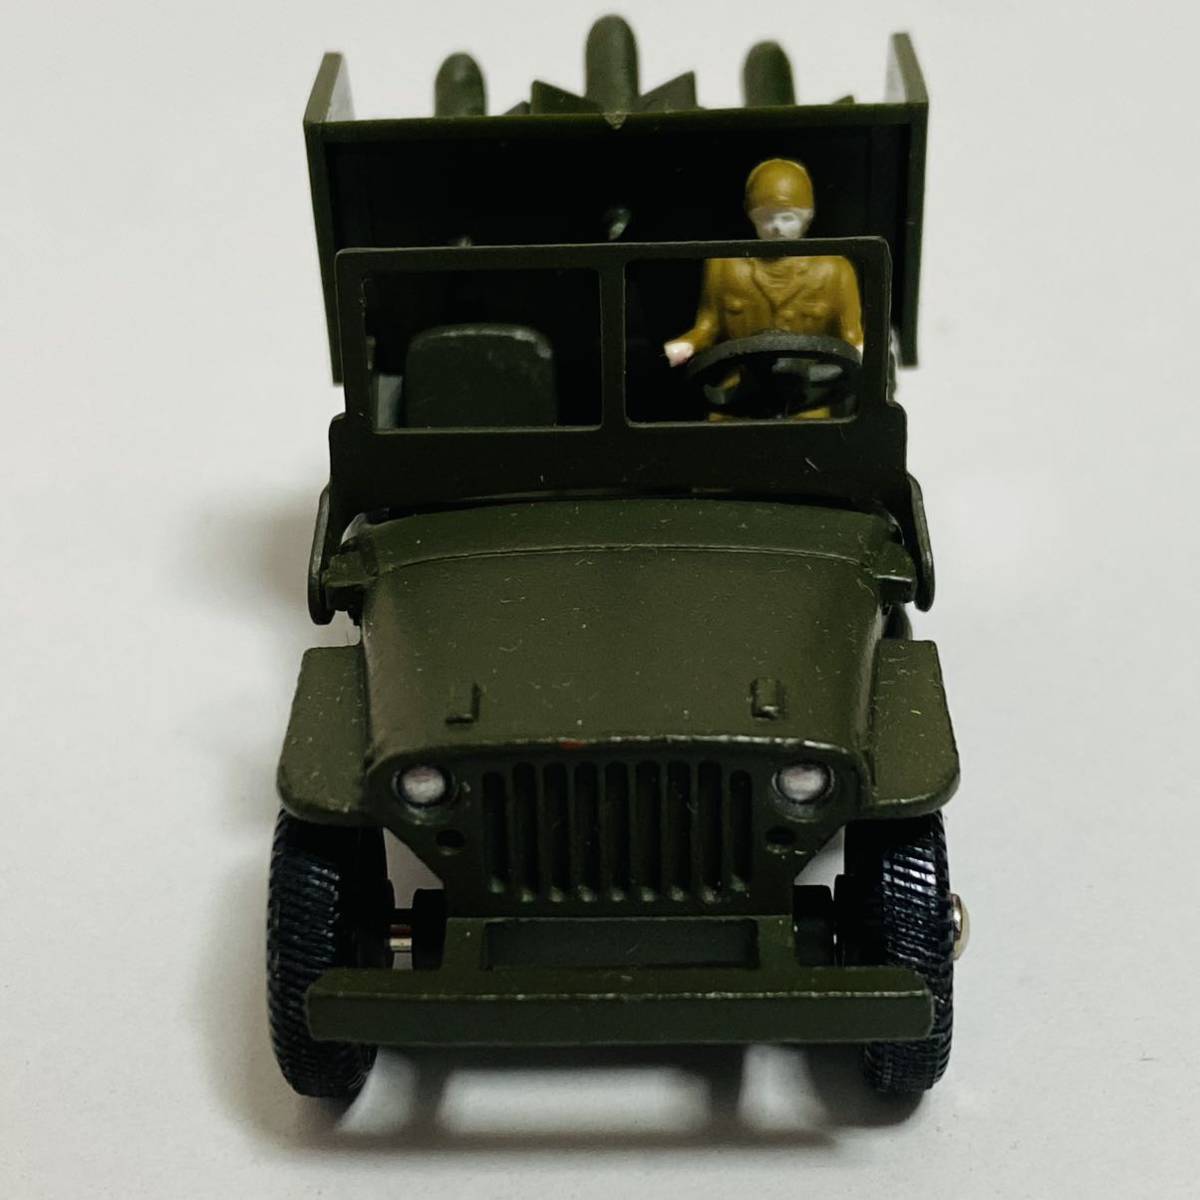 [ б/у товар ]DINKY TOYS Dinky игрушки 828 JEEP PORTE-FUSEES SS10 Jeep миникар модель машина 